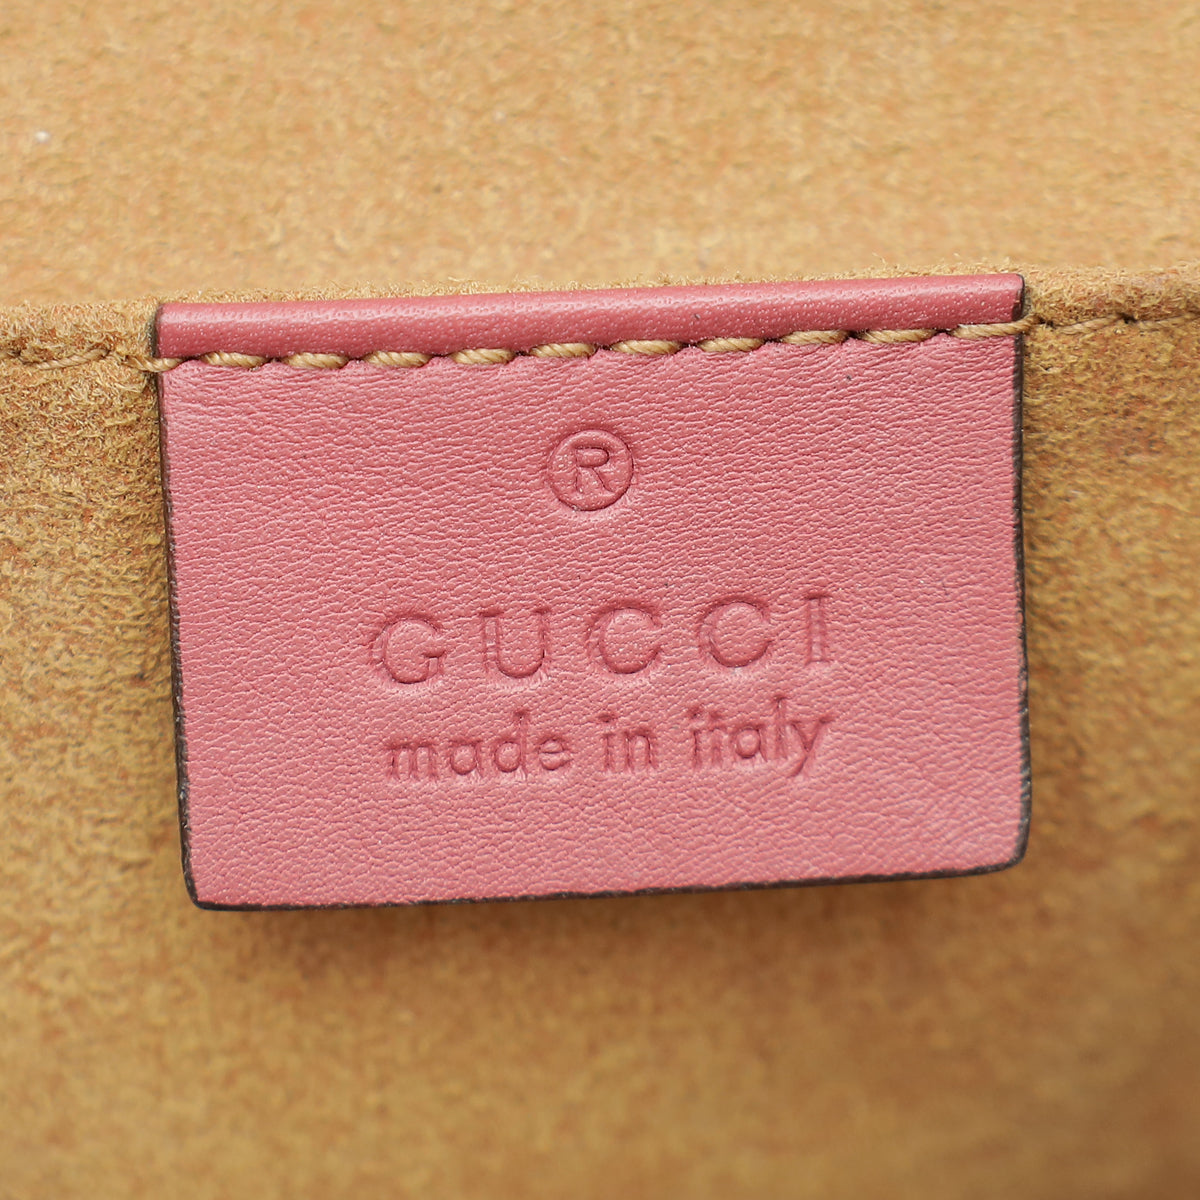 Gucci Multicolor GG Supreme Blooms Print Padlock Small Chain Bag